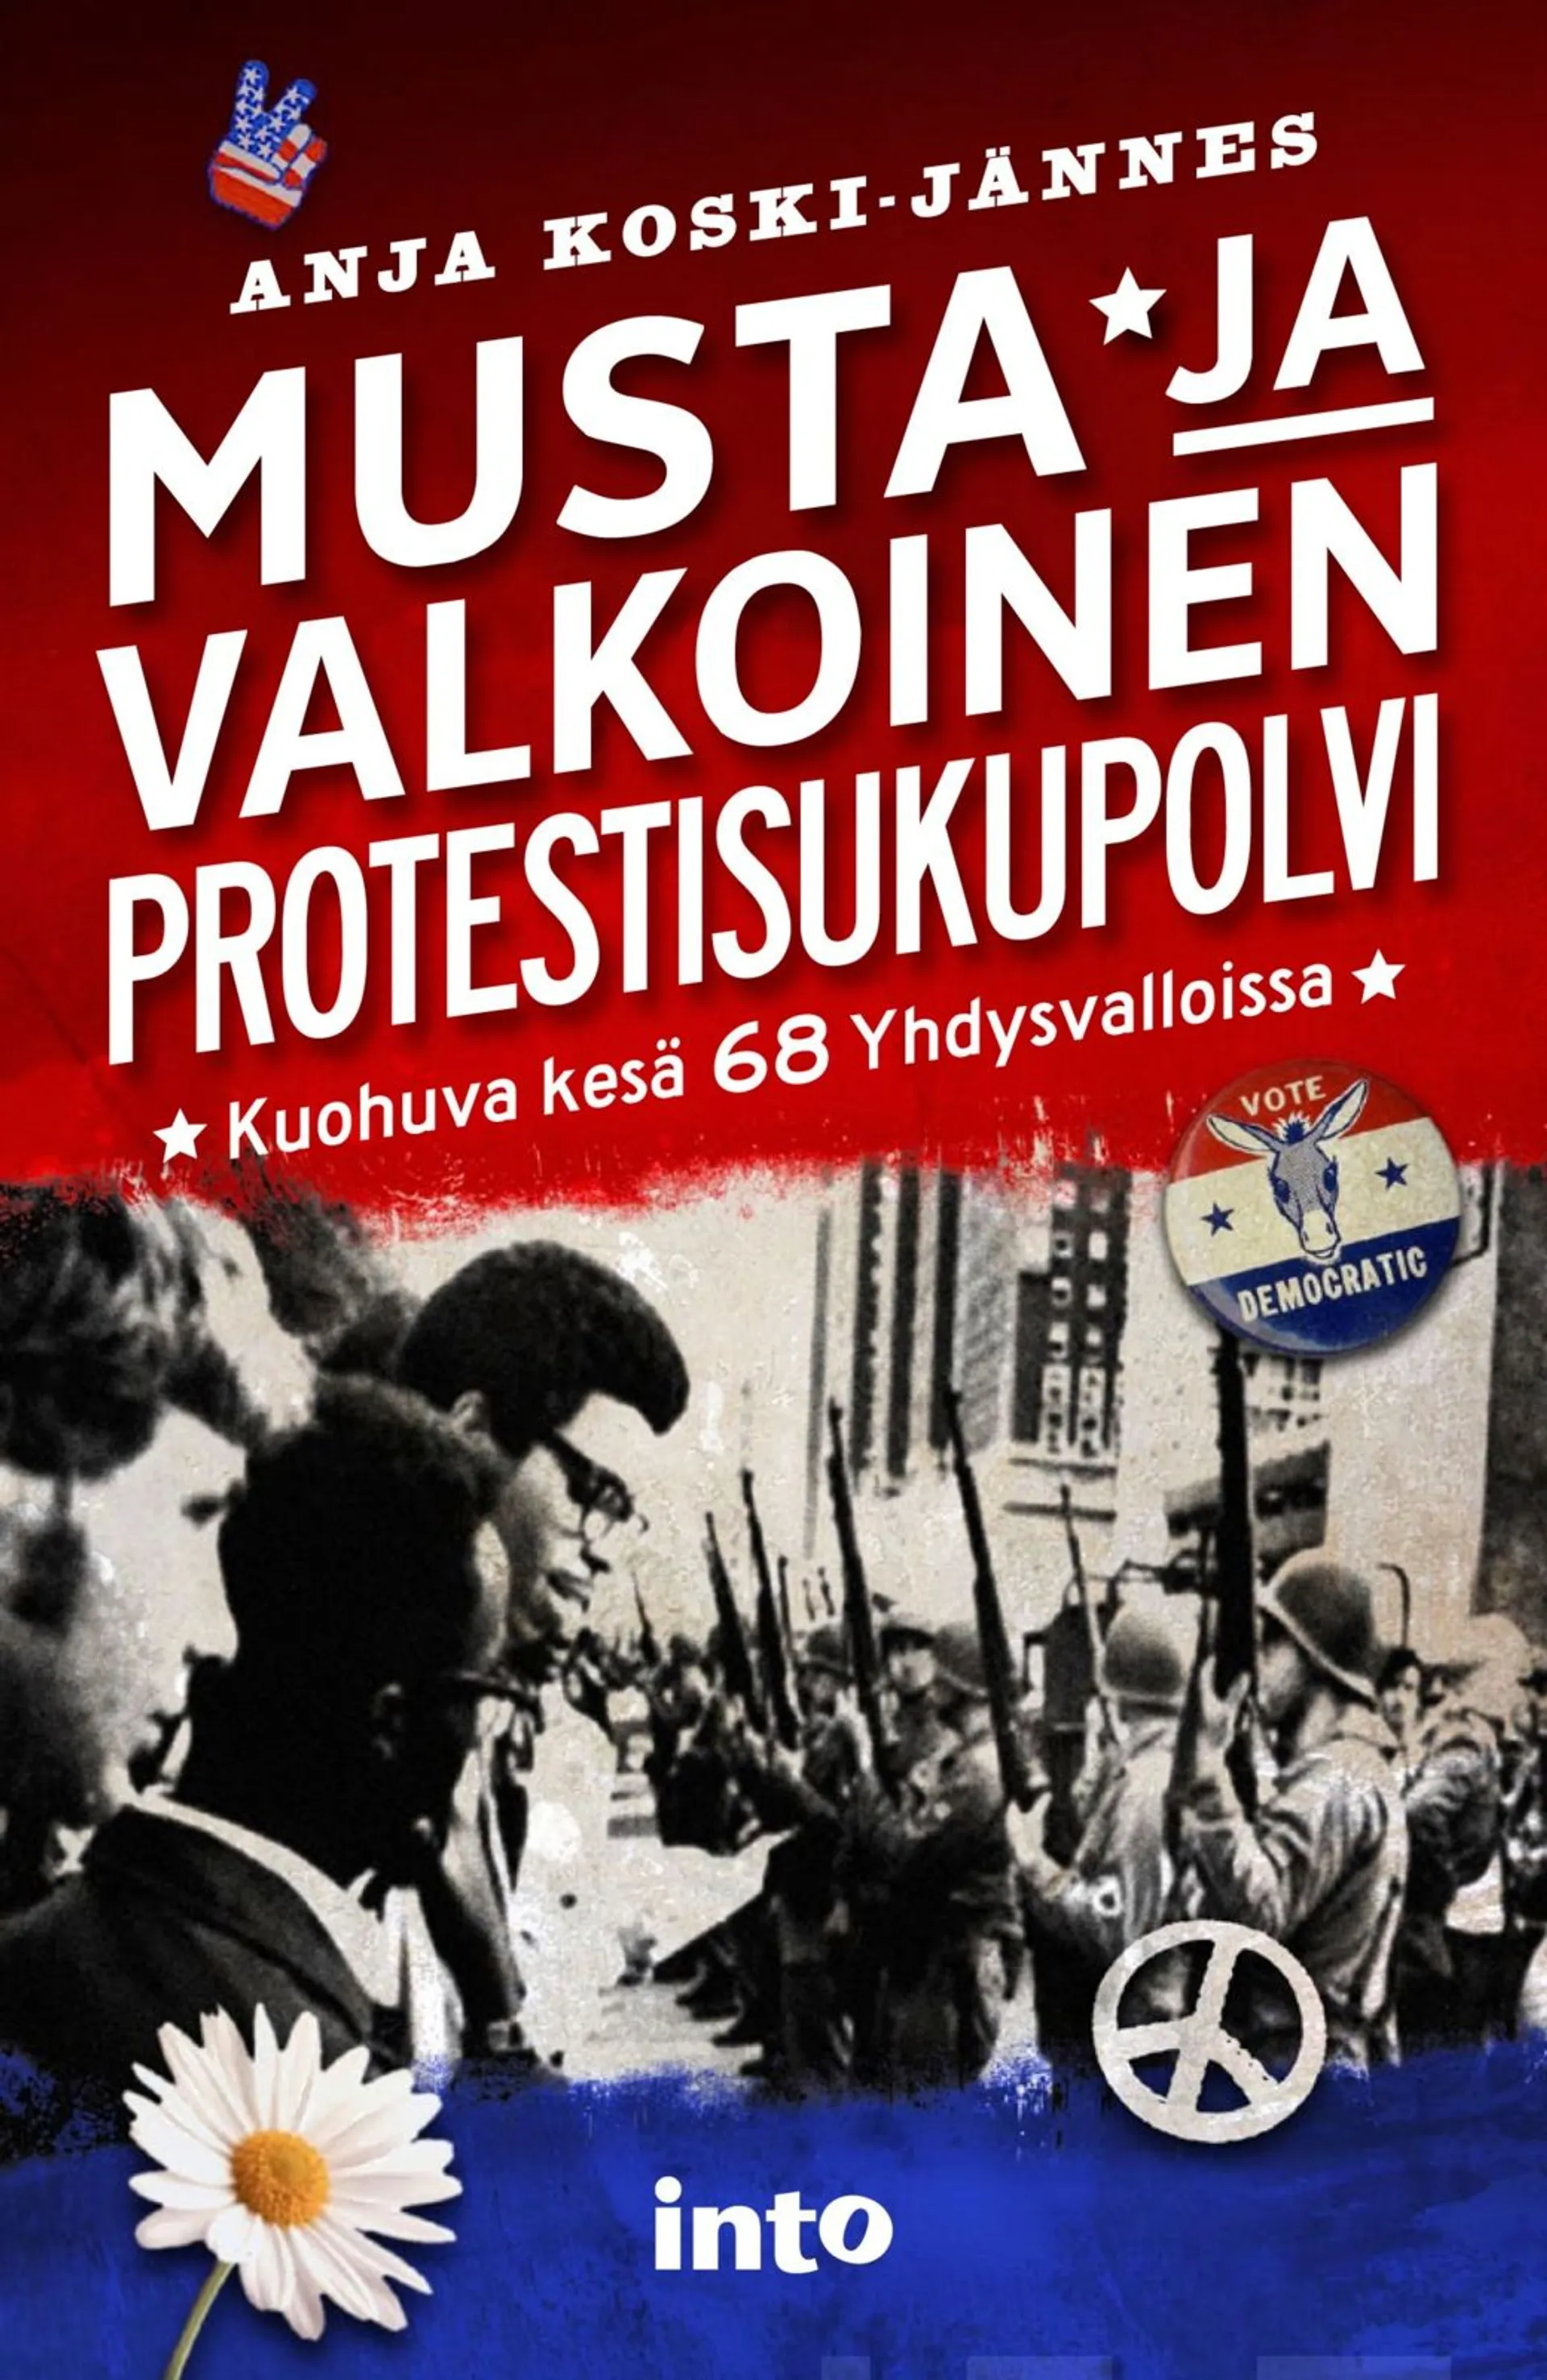 Koski-Jännes, Musta ja valkoinen protestisukupolvi